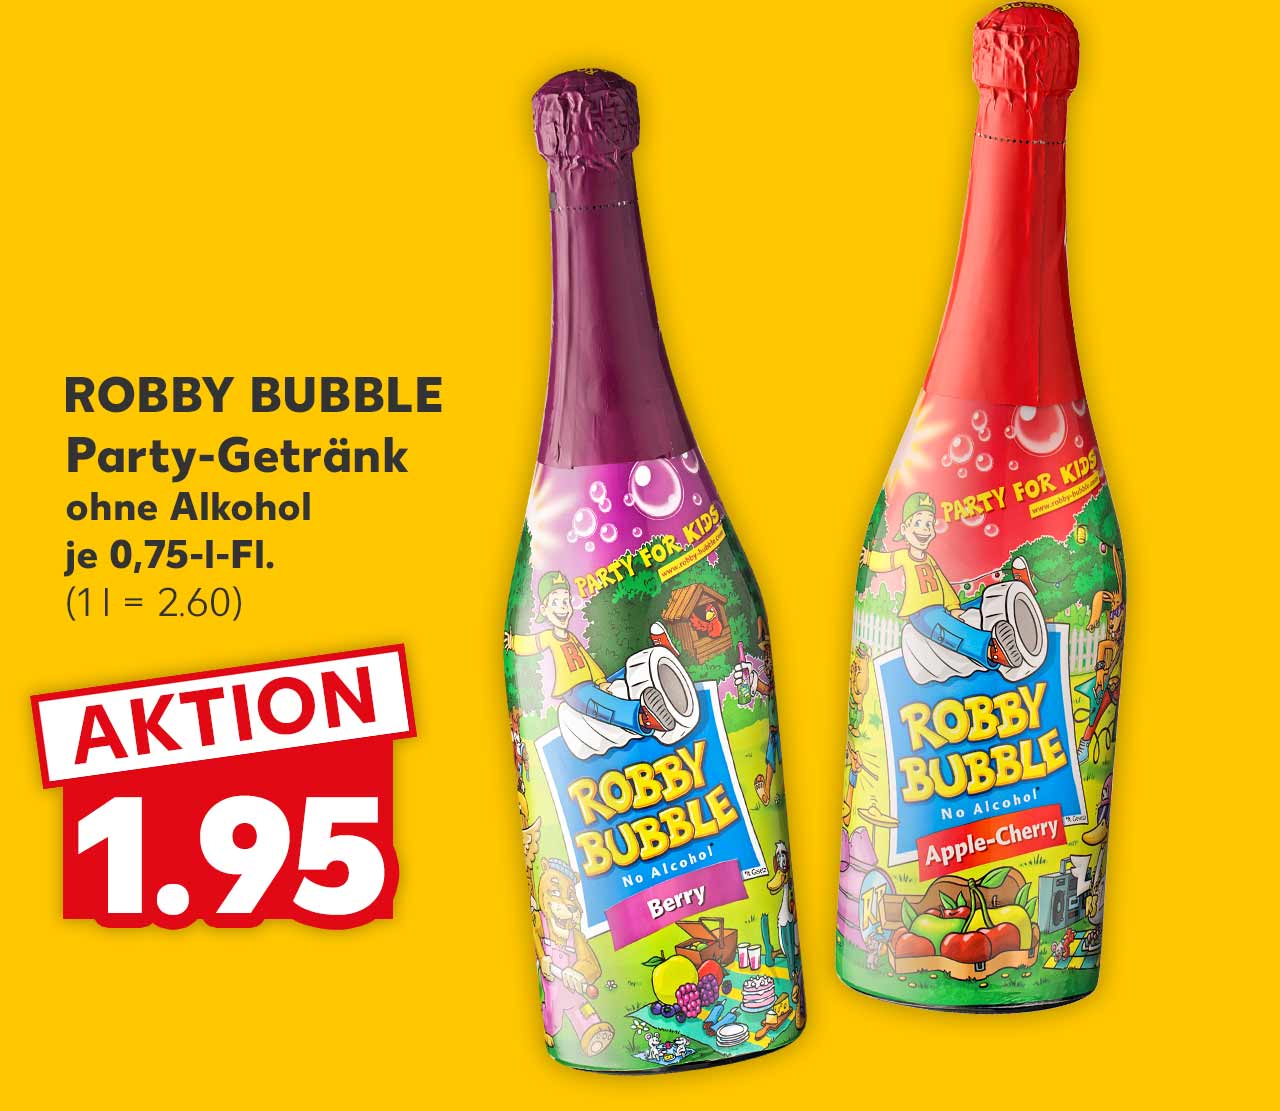 ROBBY BUBBLE Party-Getränk versch. Sorten ohne Alkohol je 0,75-l-Fl. für 1.95 Euro (1 l = 2.60)